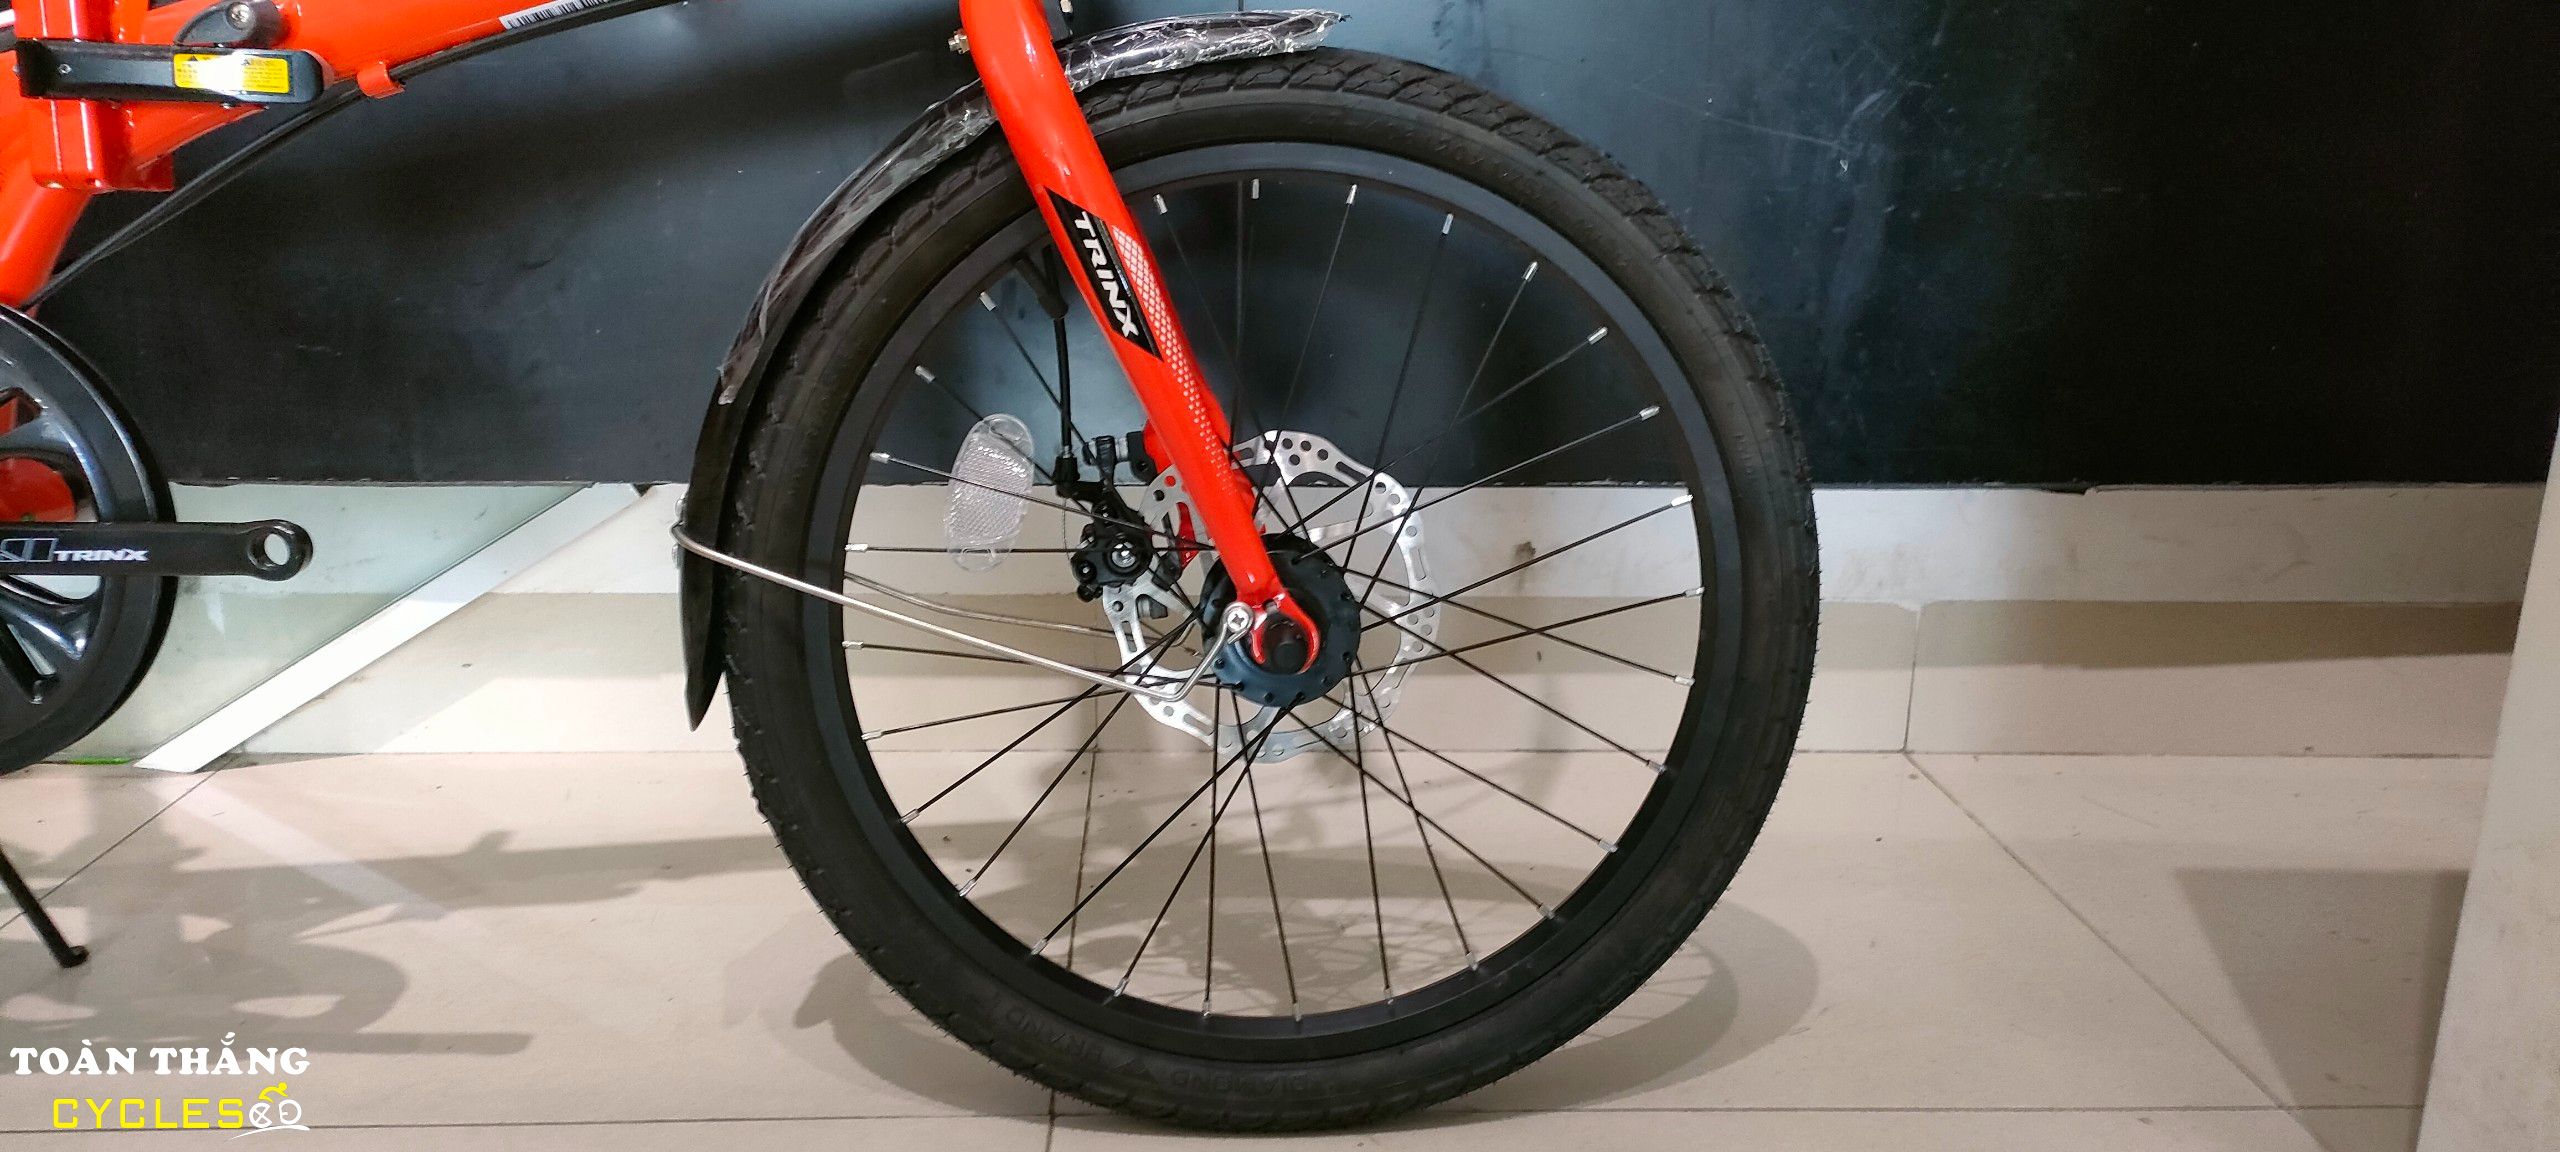 Xe đạp gấp TrinX LIFE 2.0 2020 Cam